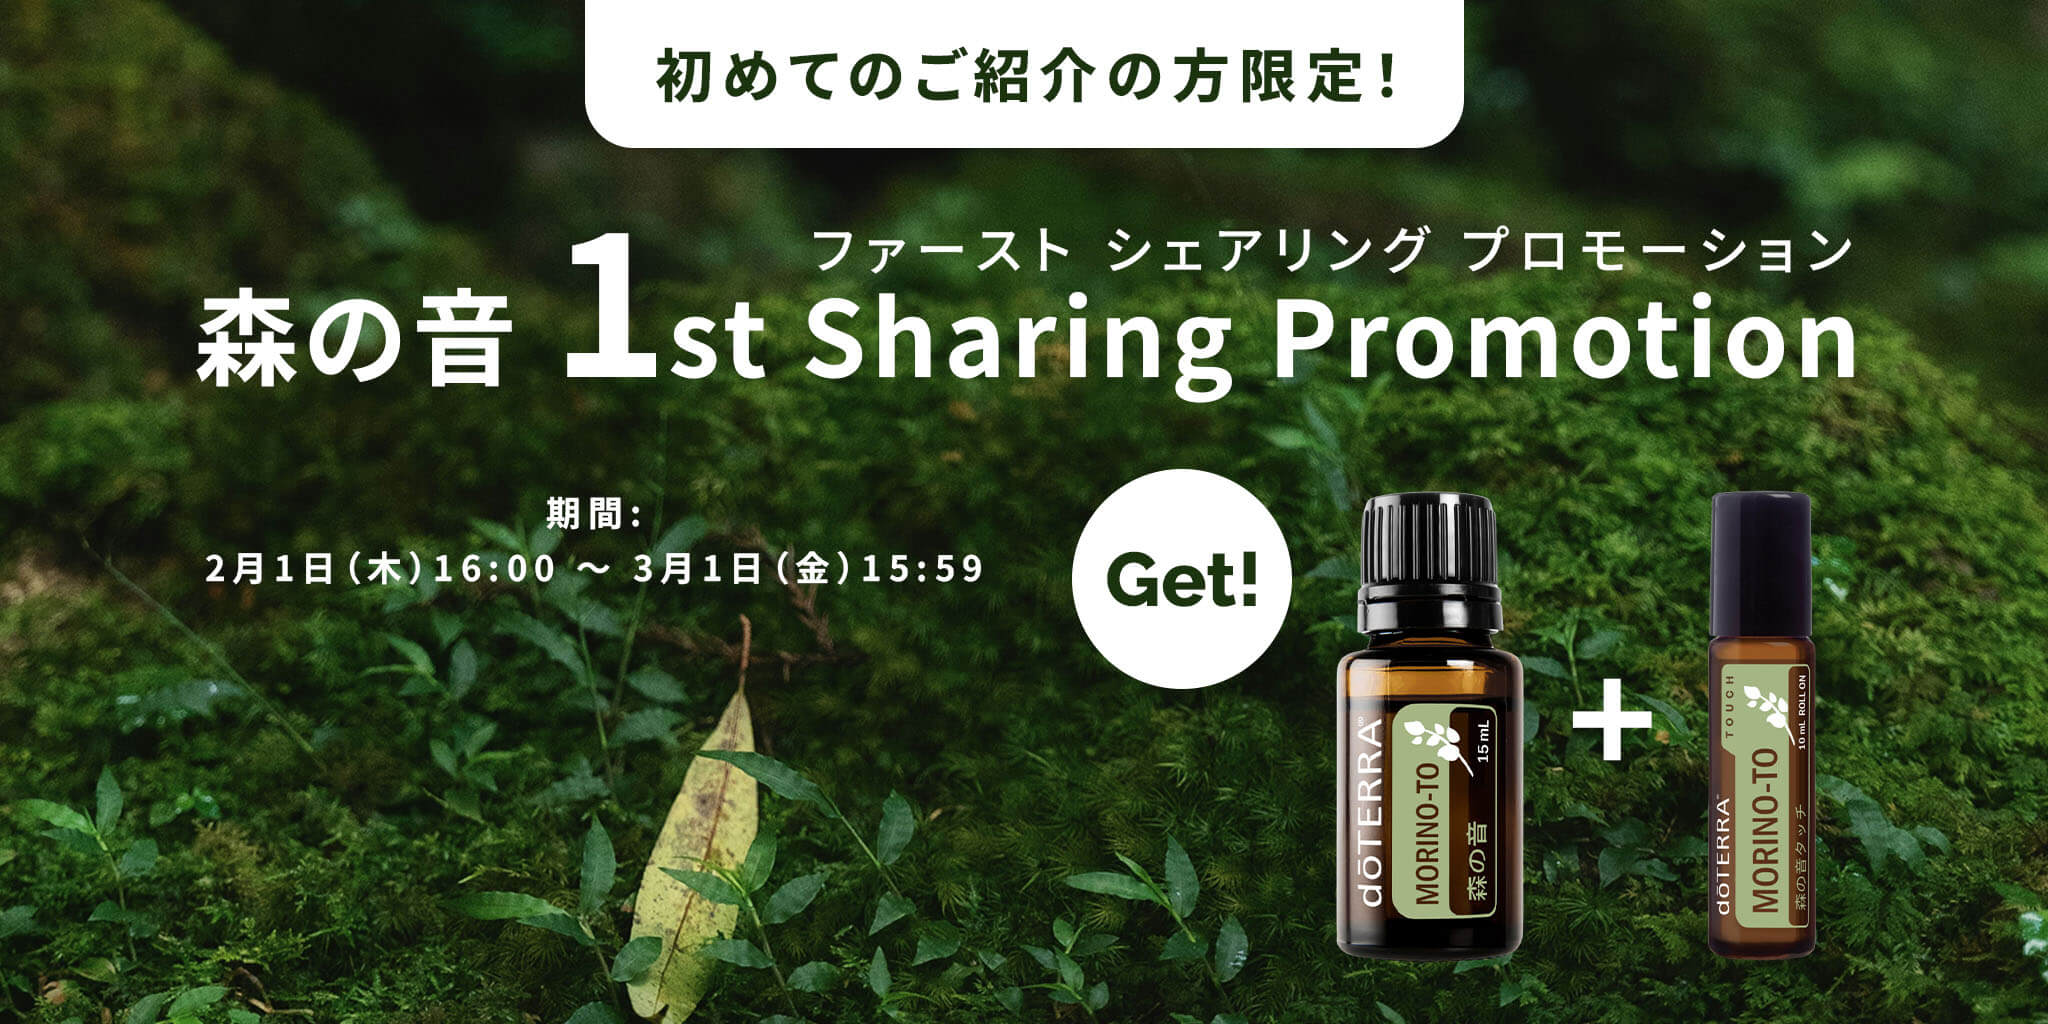 森の音 1st Sharing Promotion（ファースト シェアリング